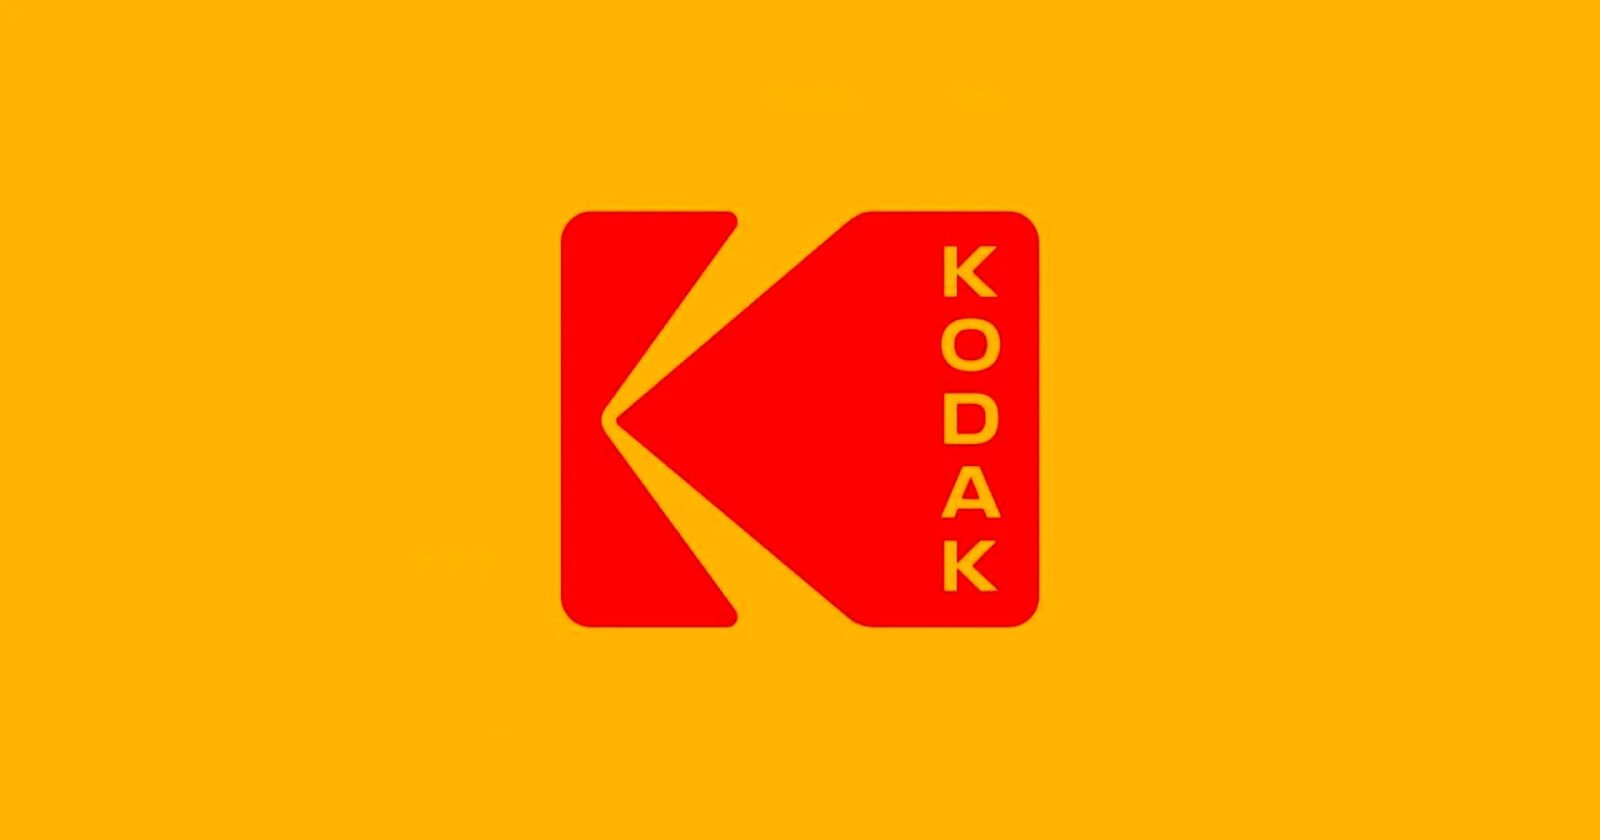 Kodak ยืนยัน! ยังคงผลิตฟิล์มต่อไปตราบเท่าที่ตลาดยังมีความต้องการ